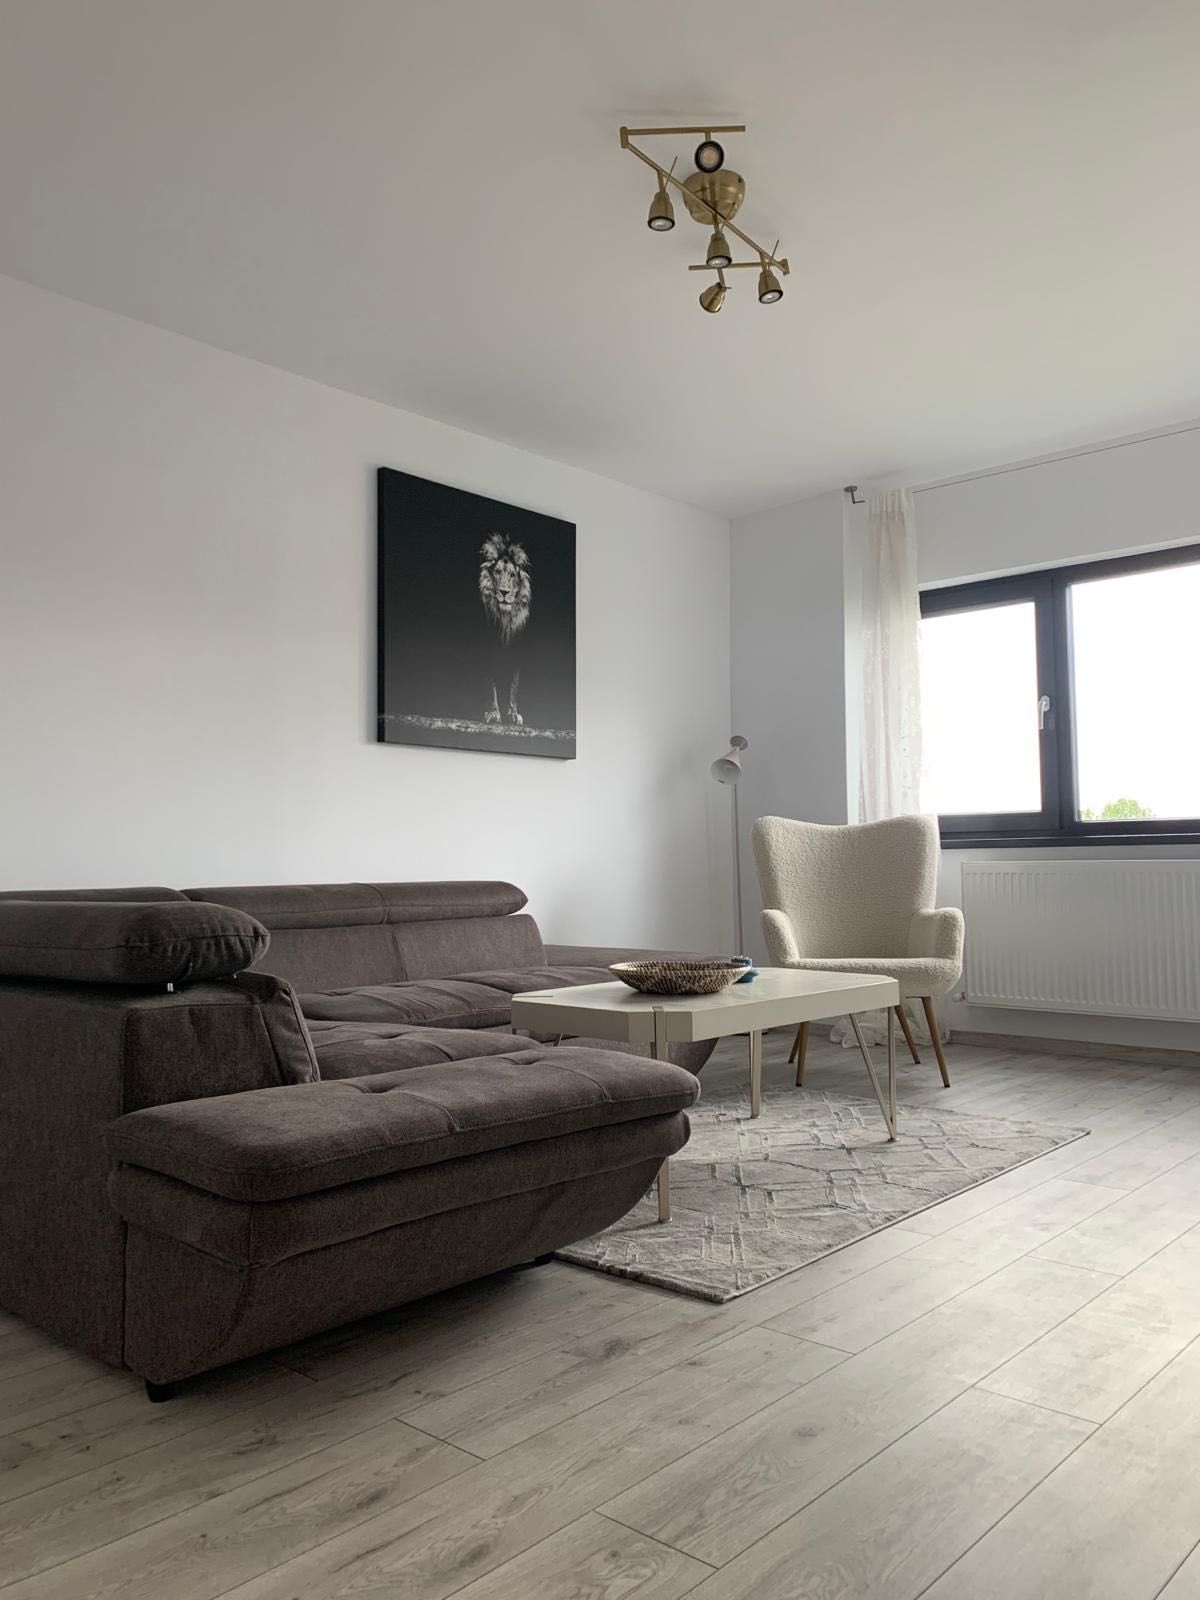 Inchiriez apartament 2 camere pe termen lung 700 euro/luna